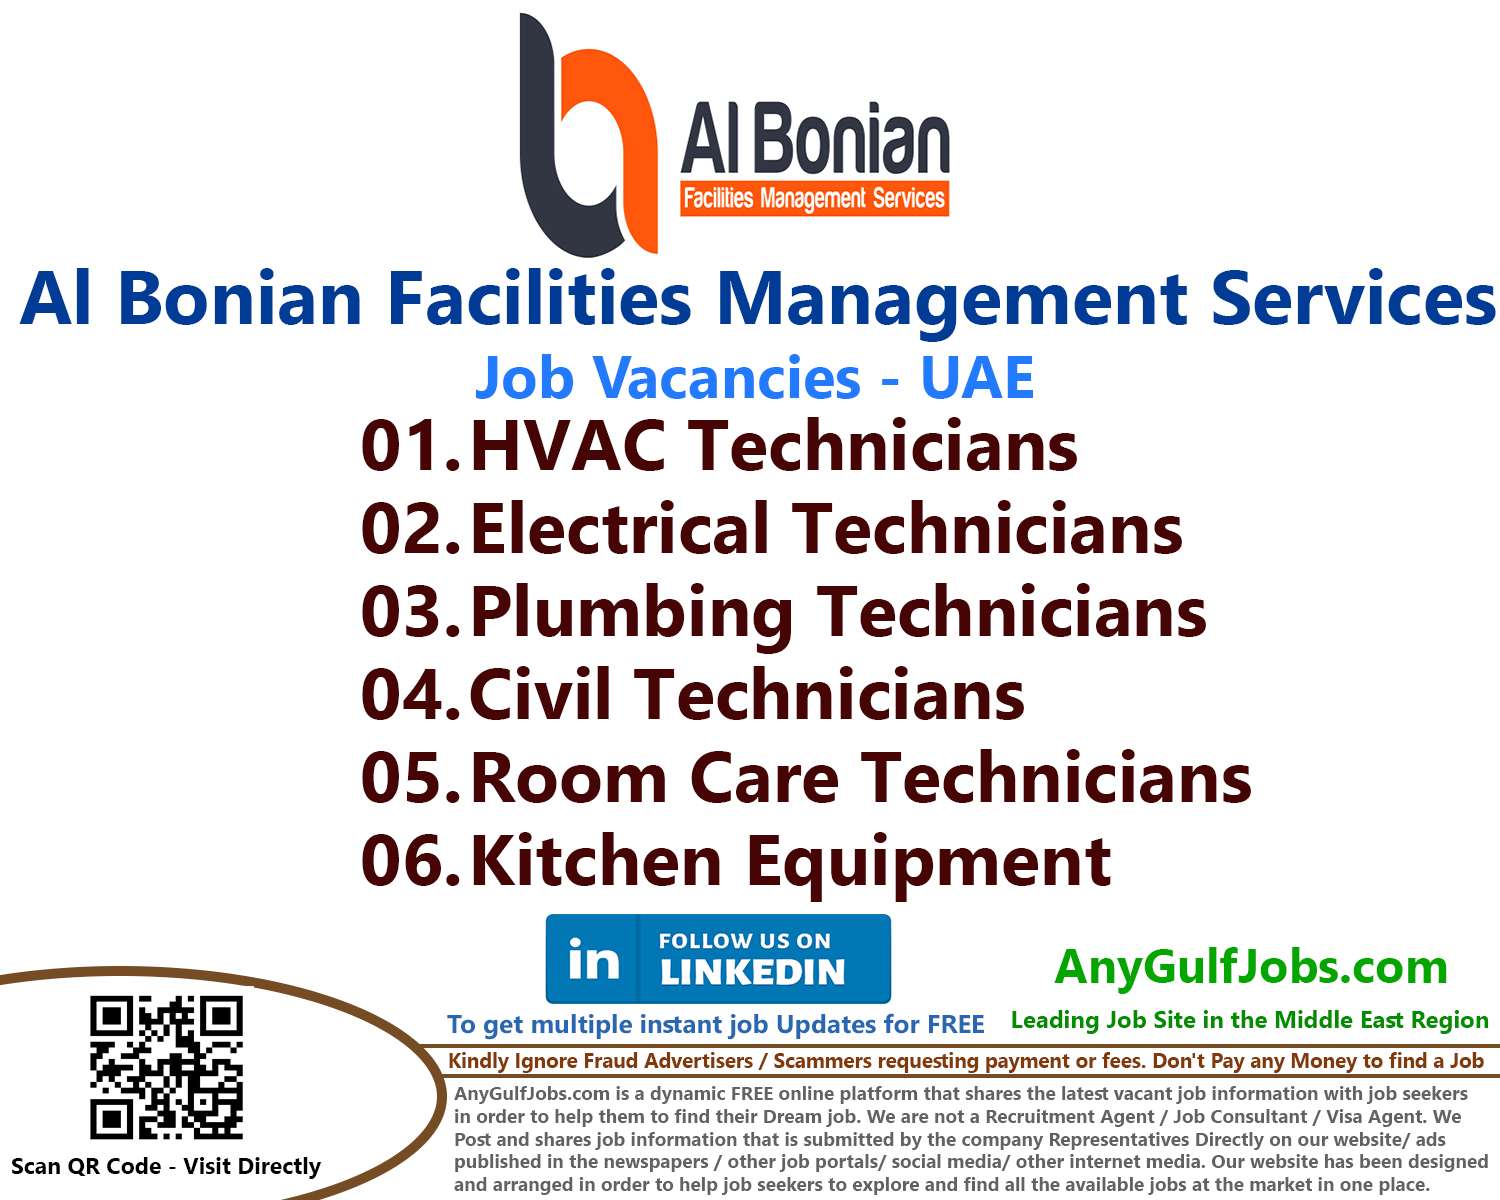 About Al Bonian Facilities Management Services